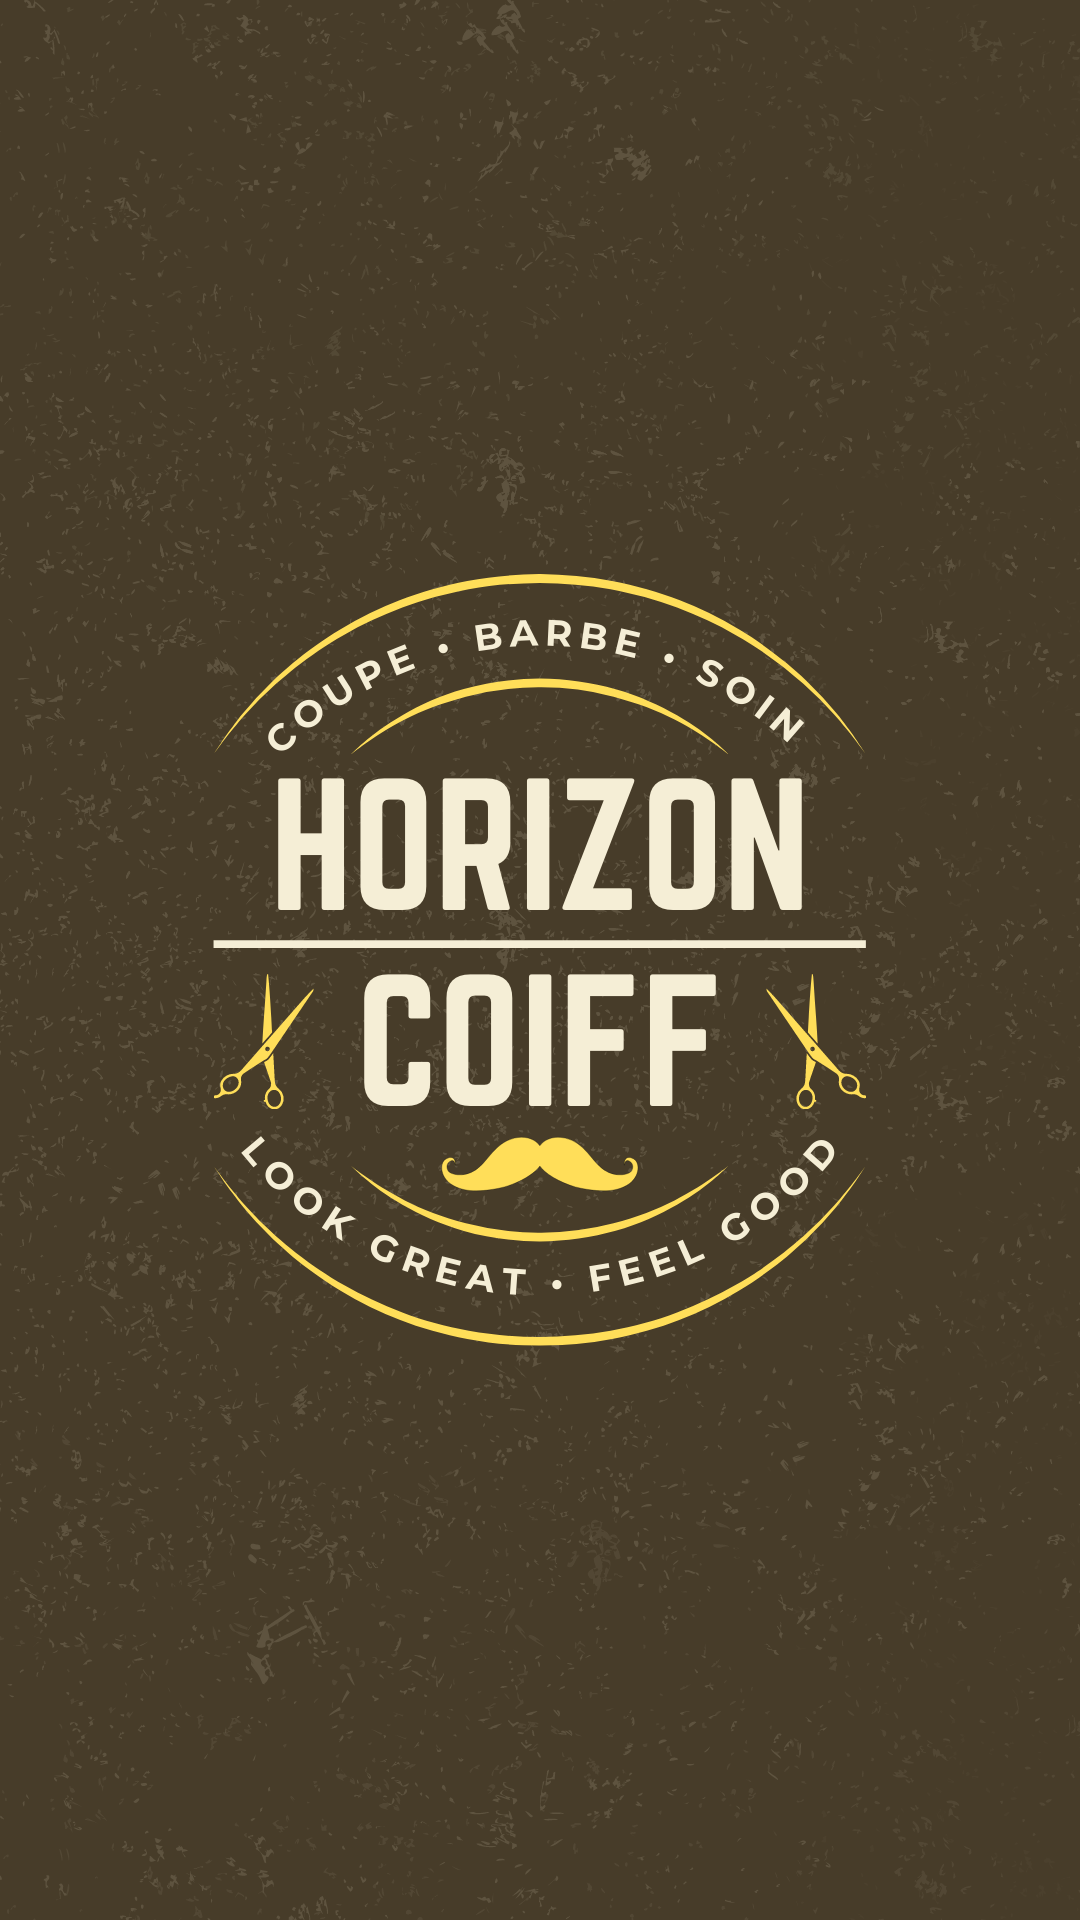 Horizon Coiff